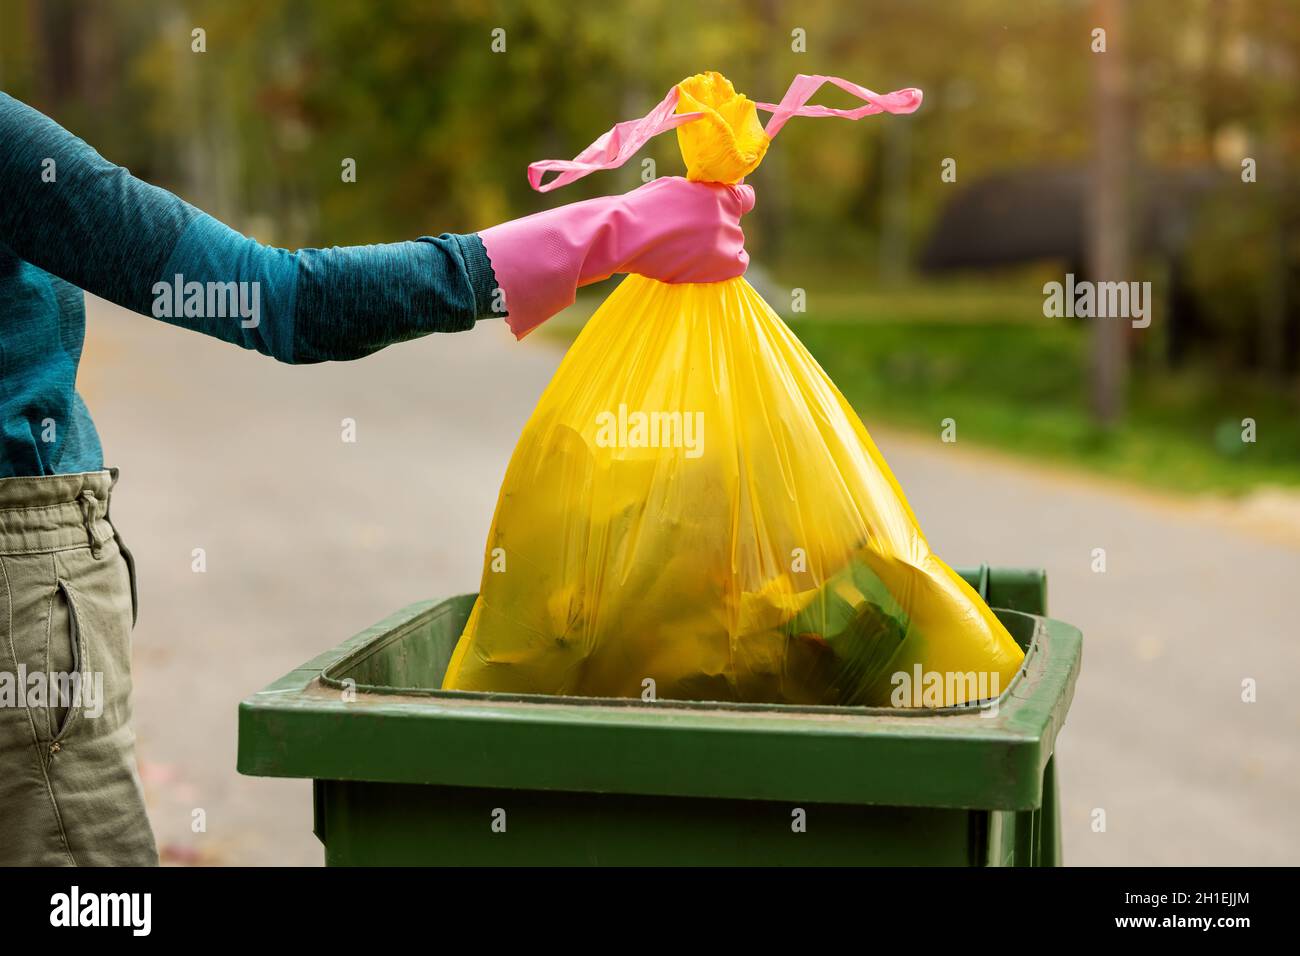 mettez à la main un sac poubelle jaune en plastique non trié dans la poubelle. déchets ménagers Banque D'Images